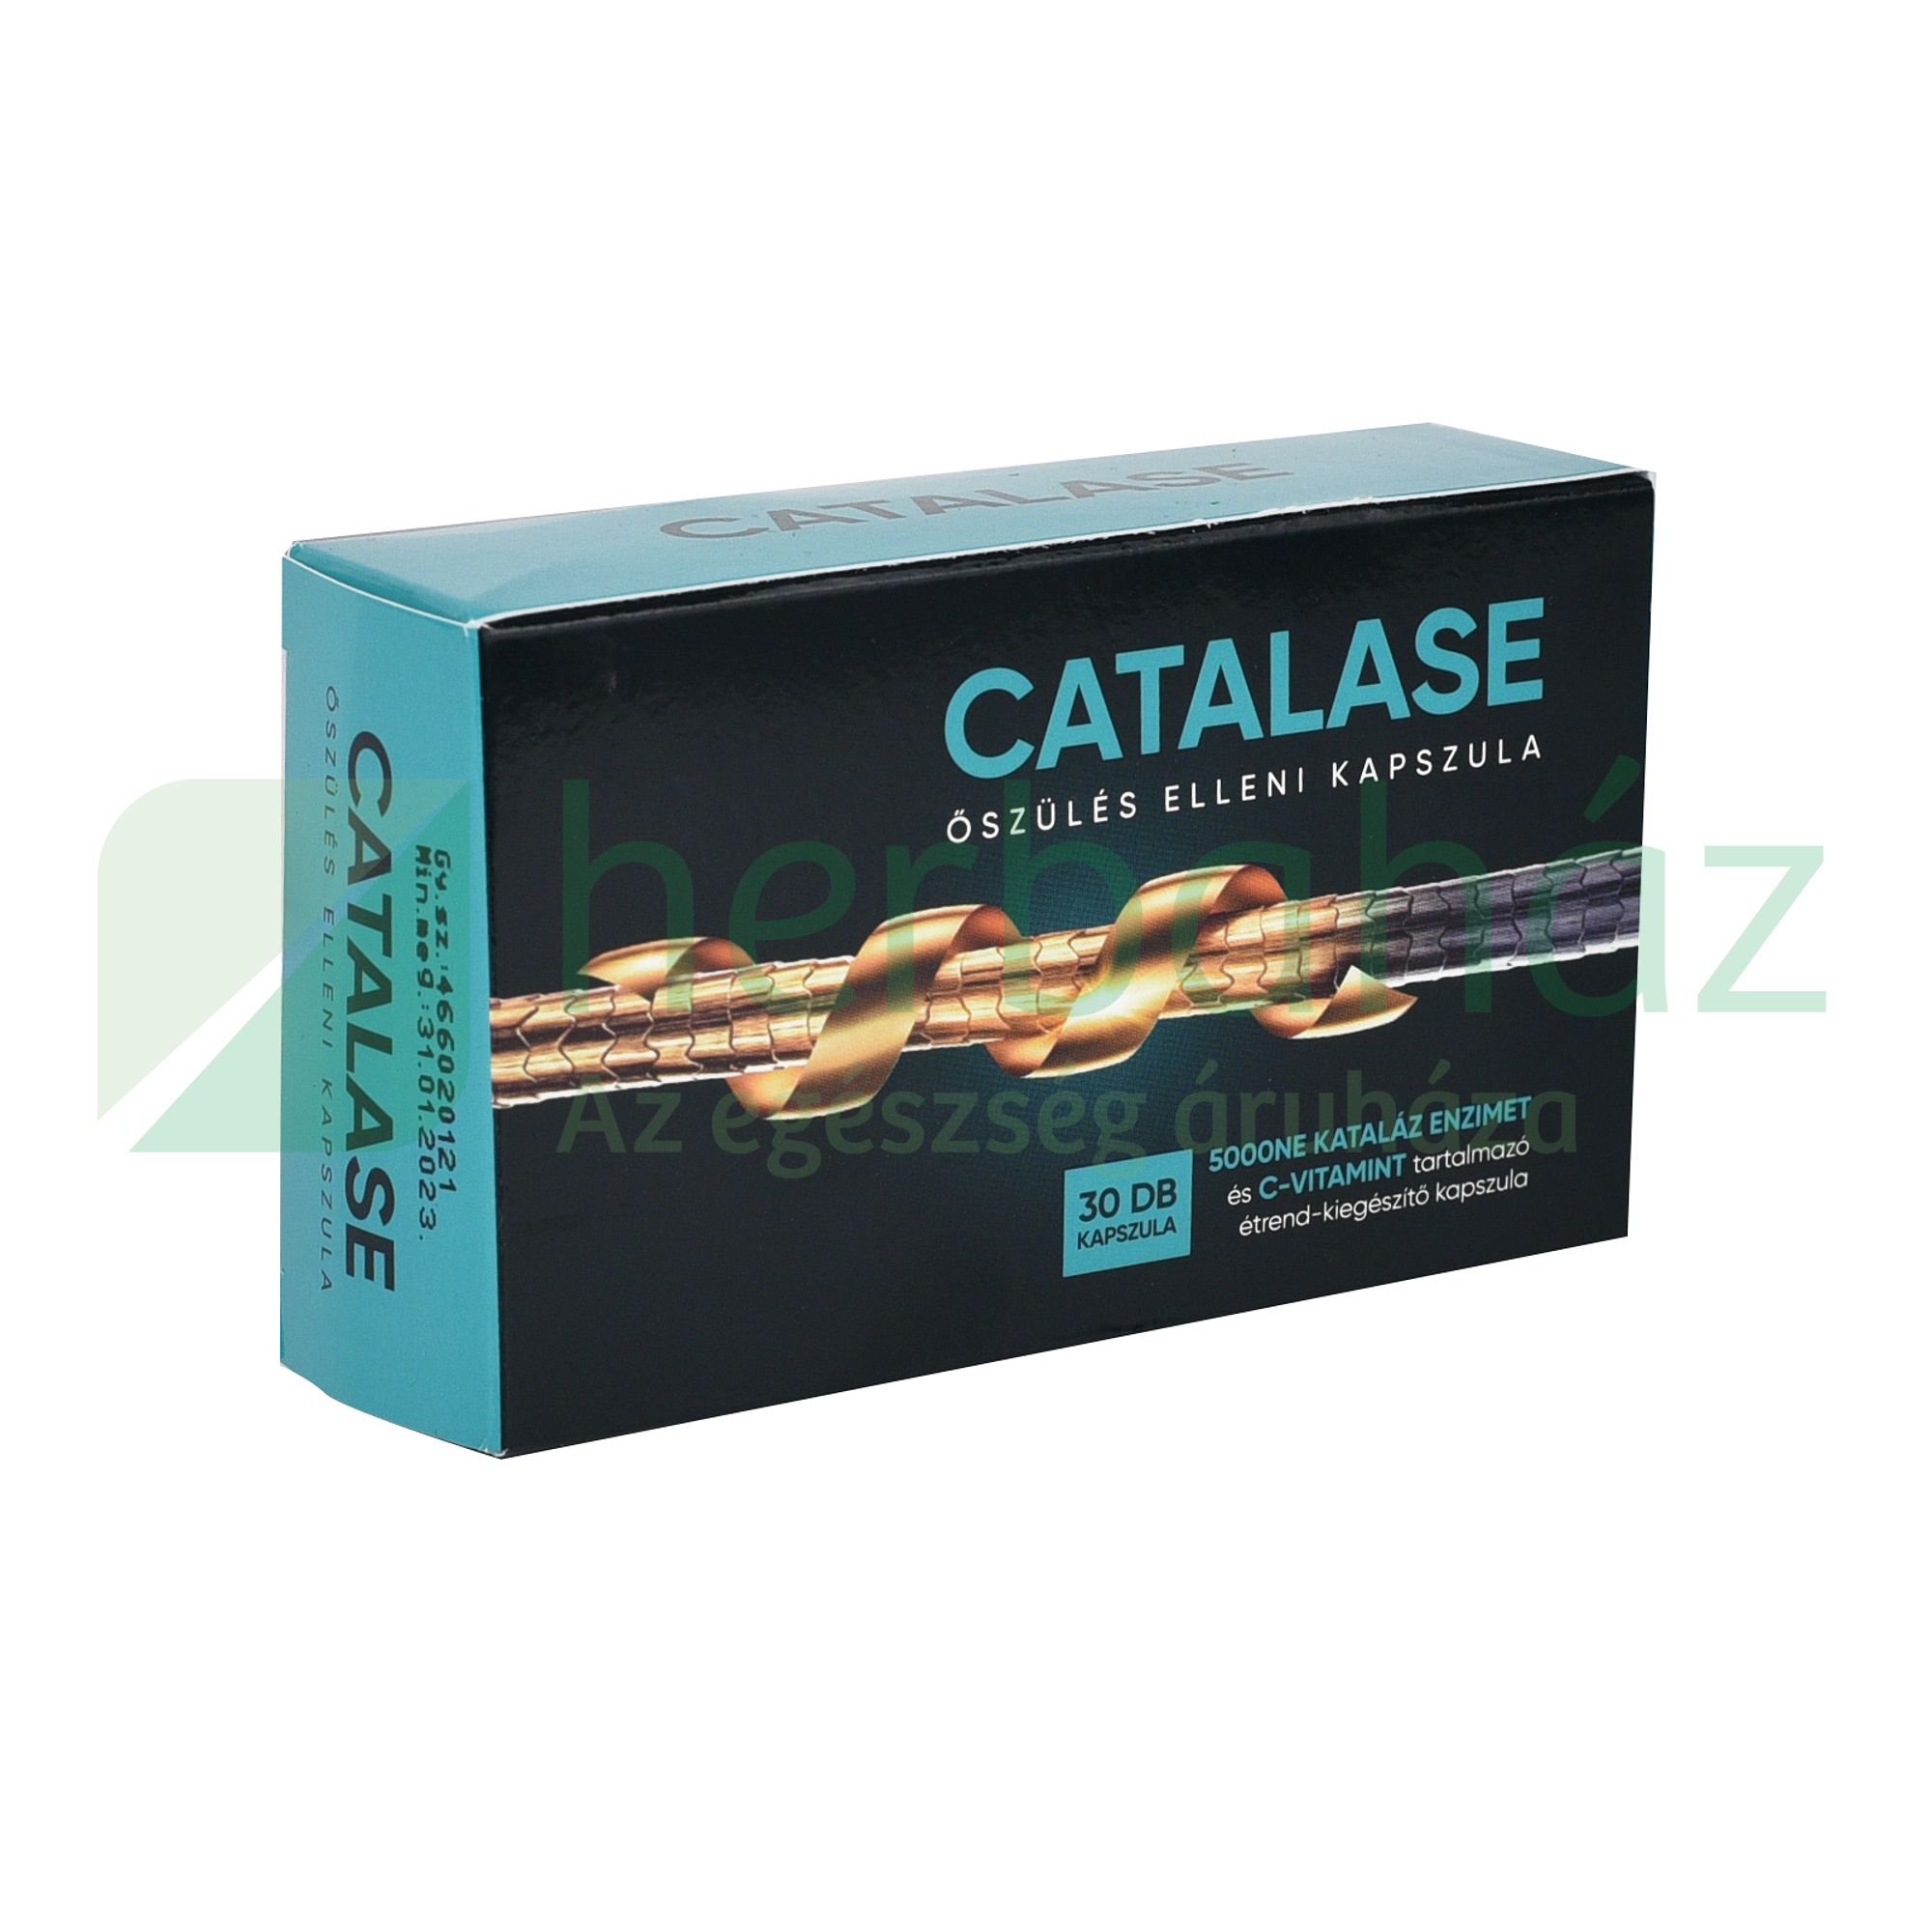 catalase